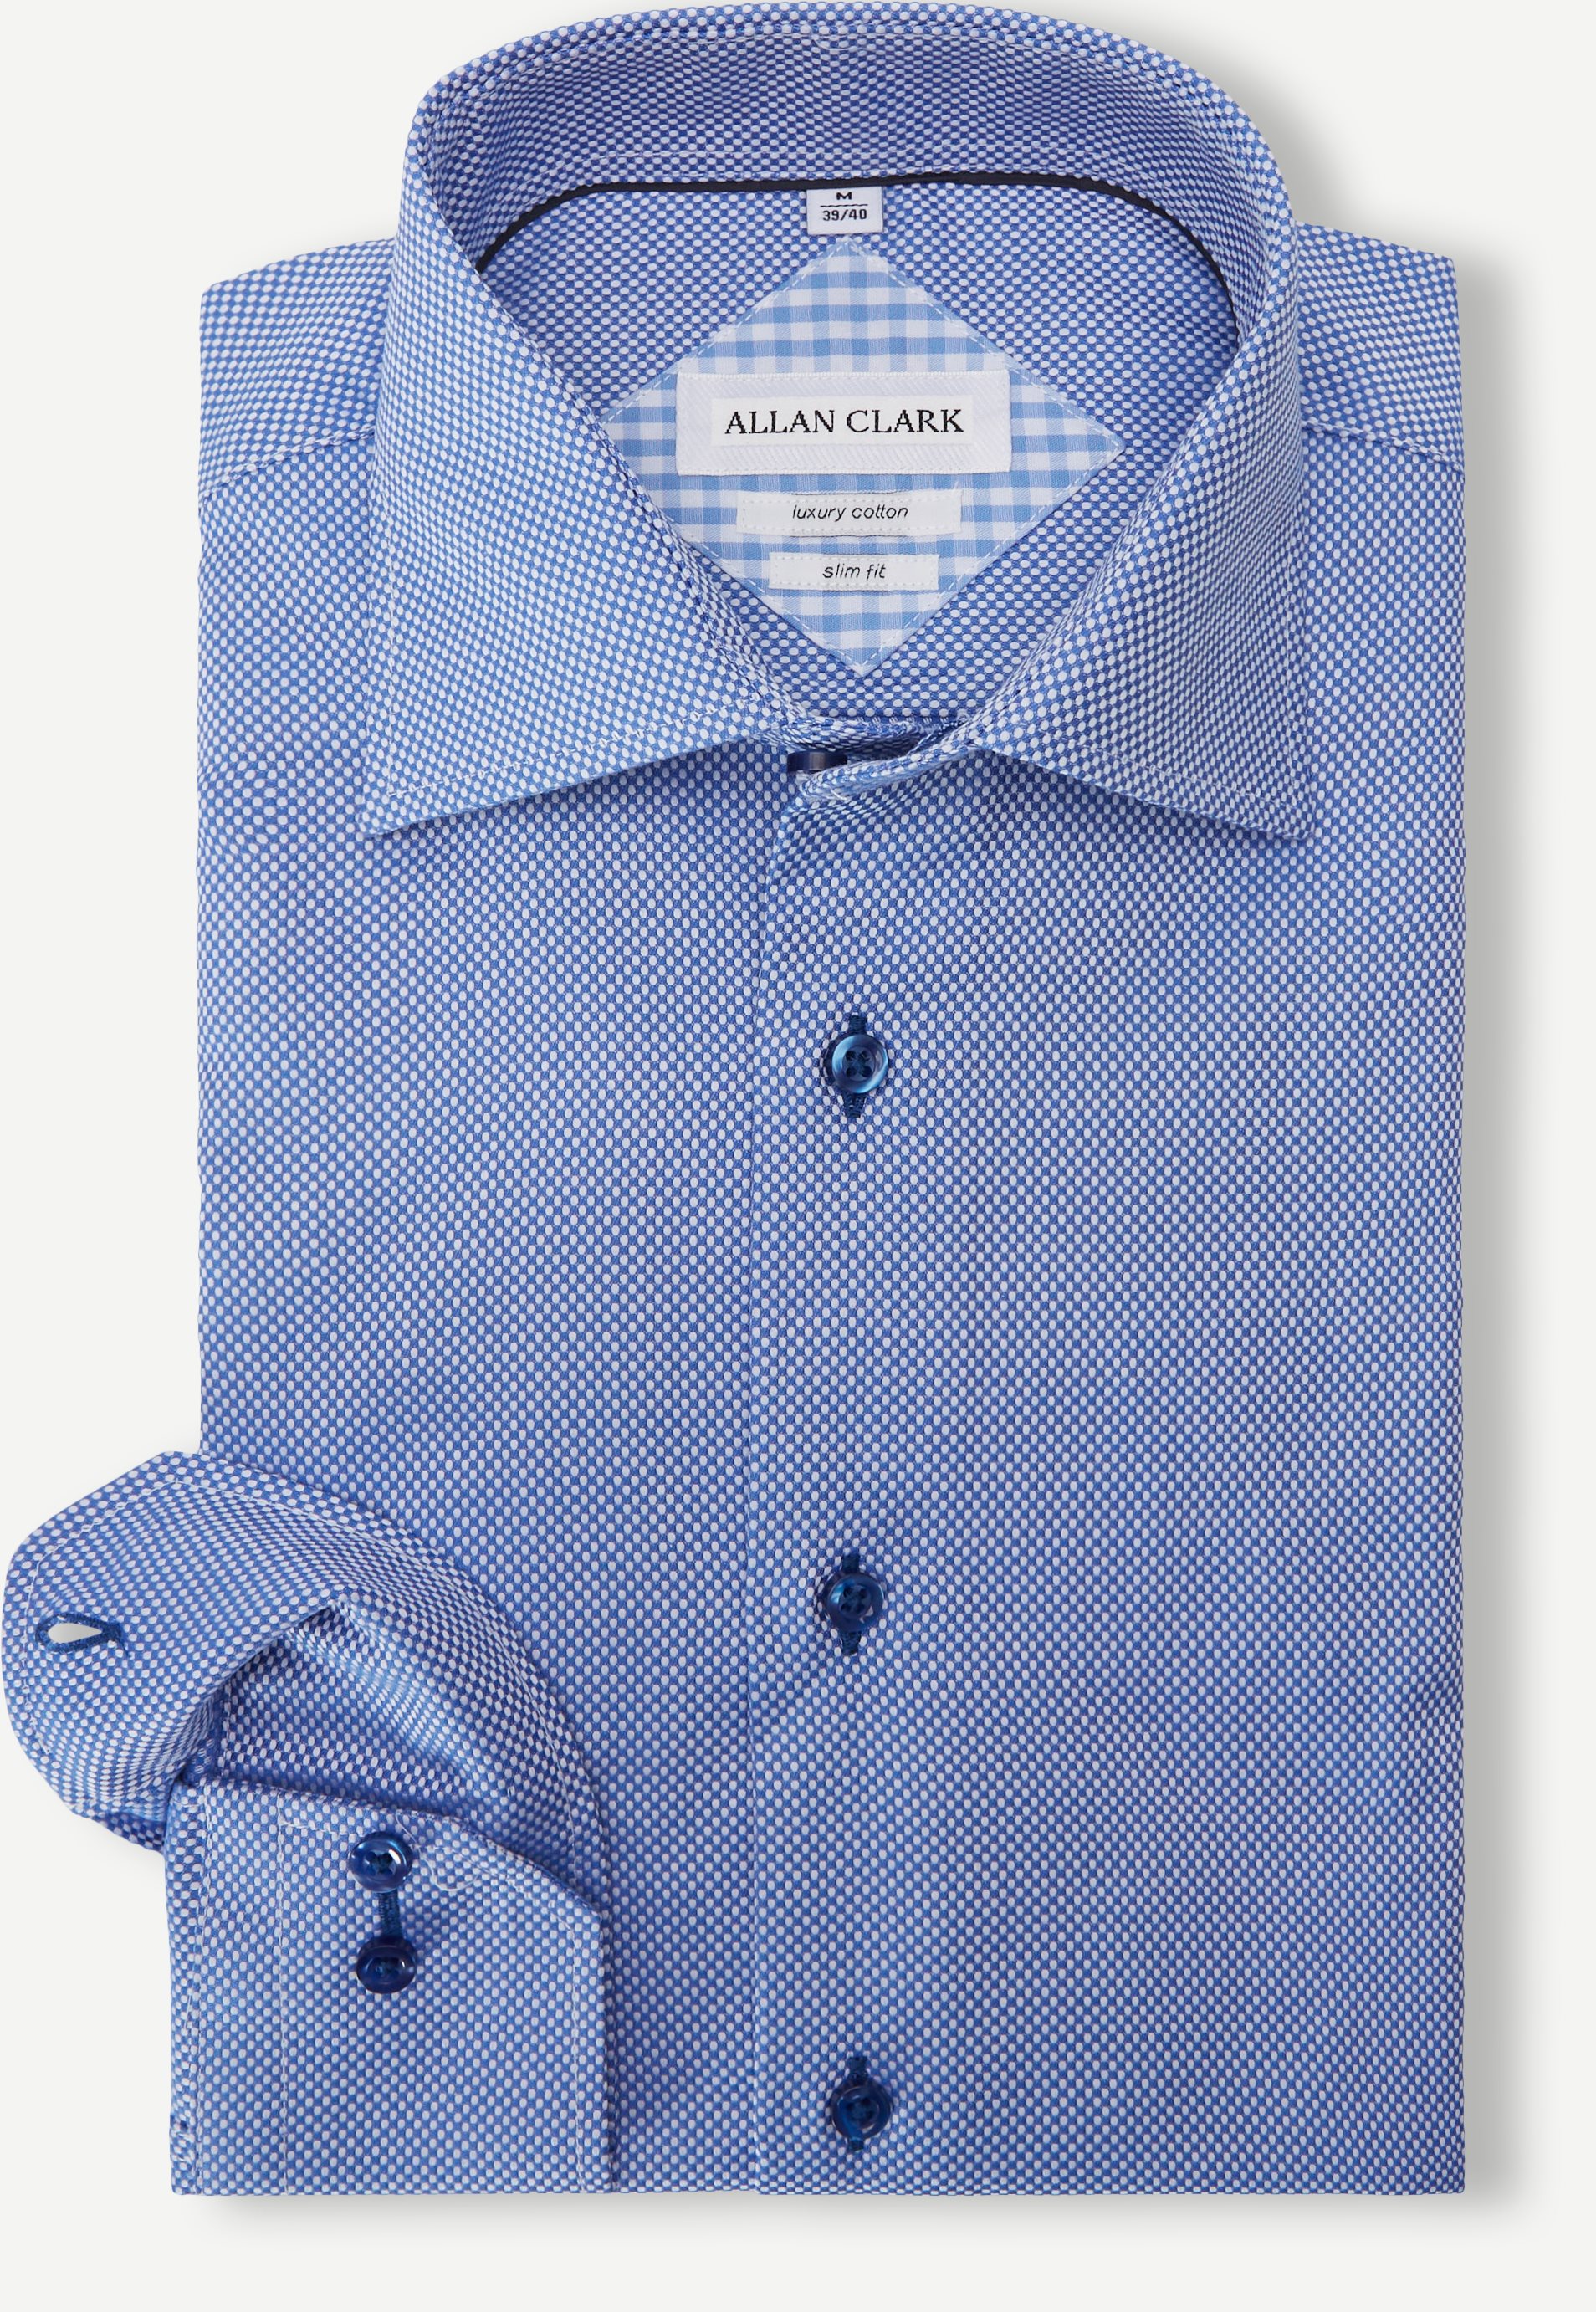 Allan Clark Shirts CLOVELLY Blue